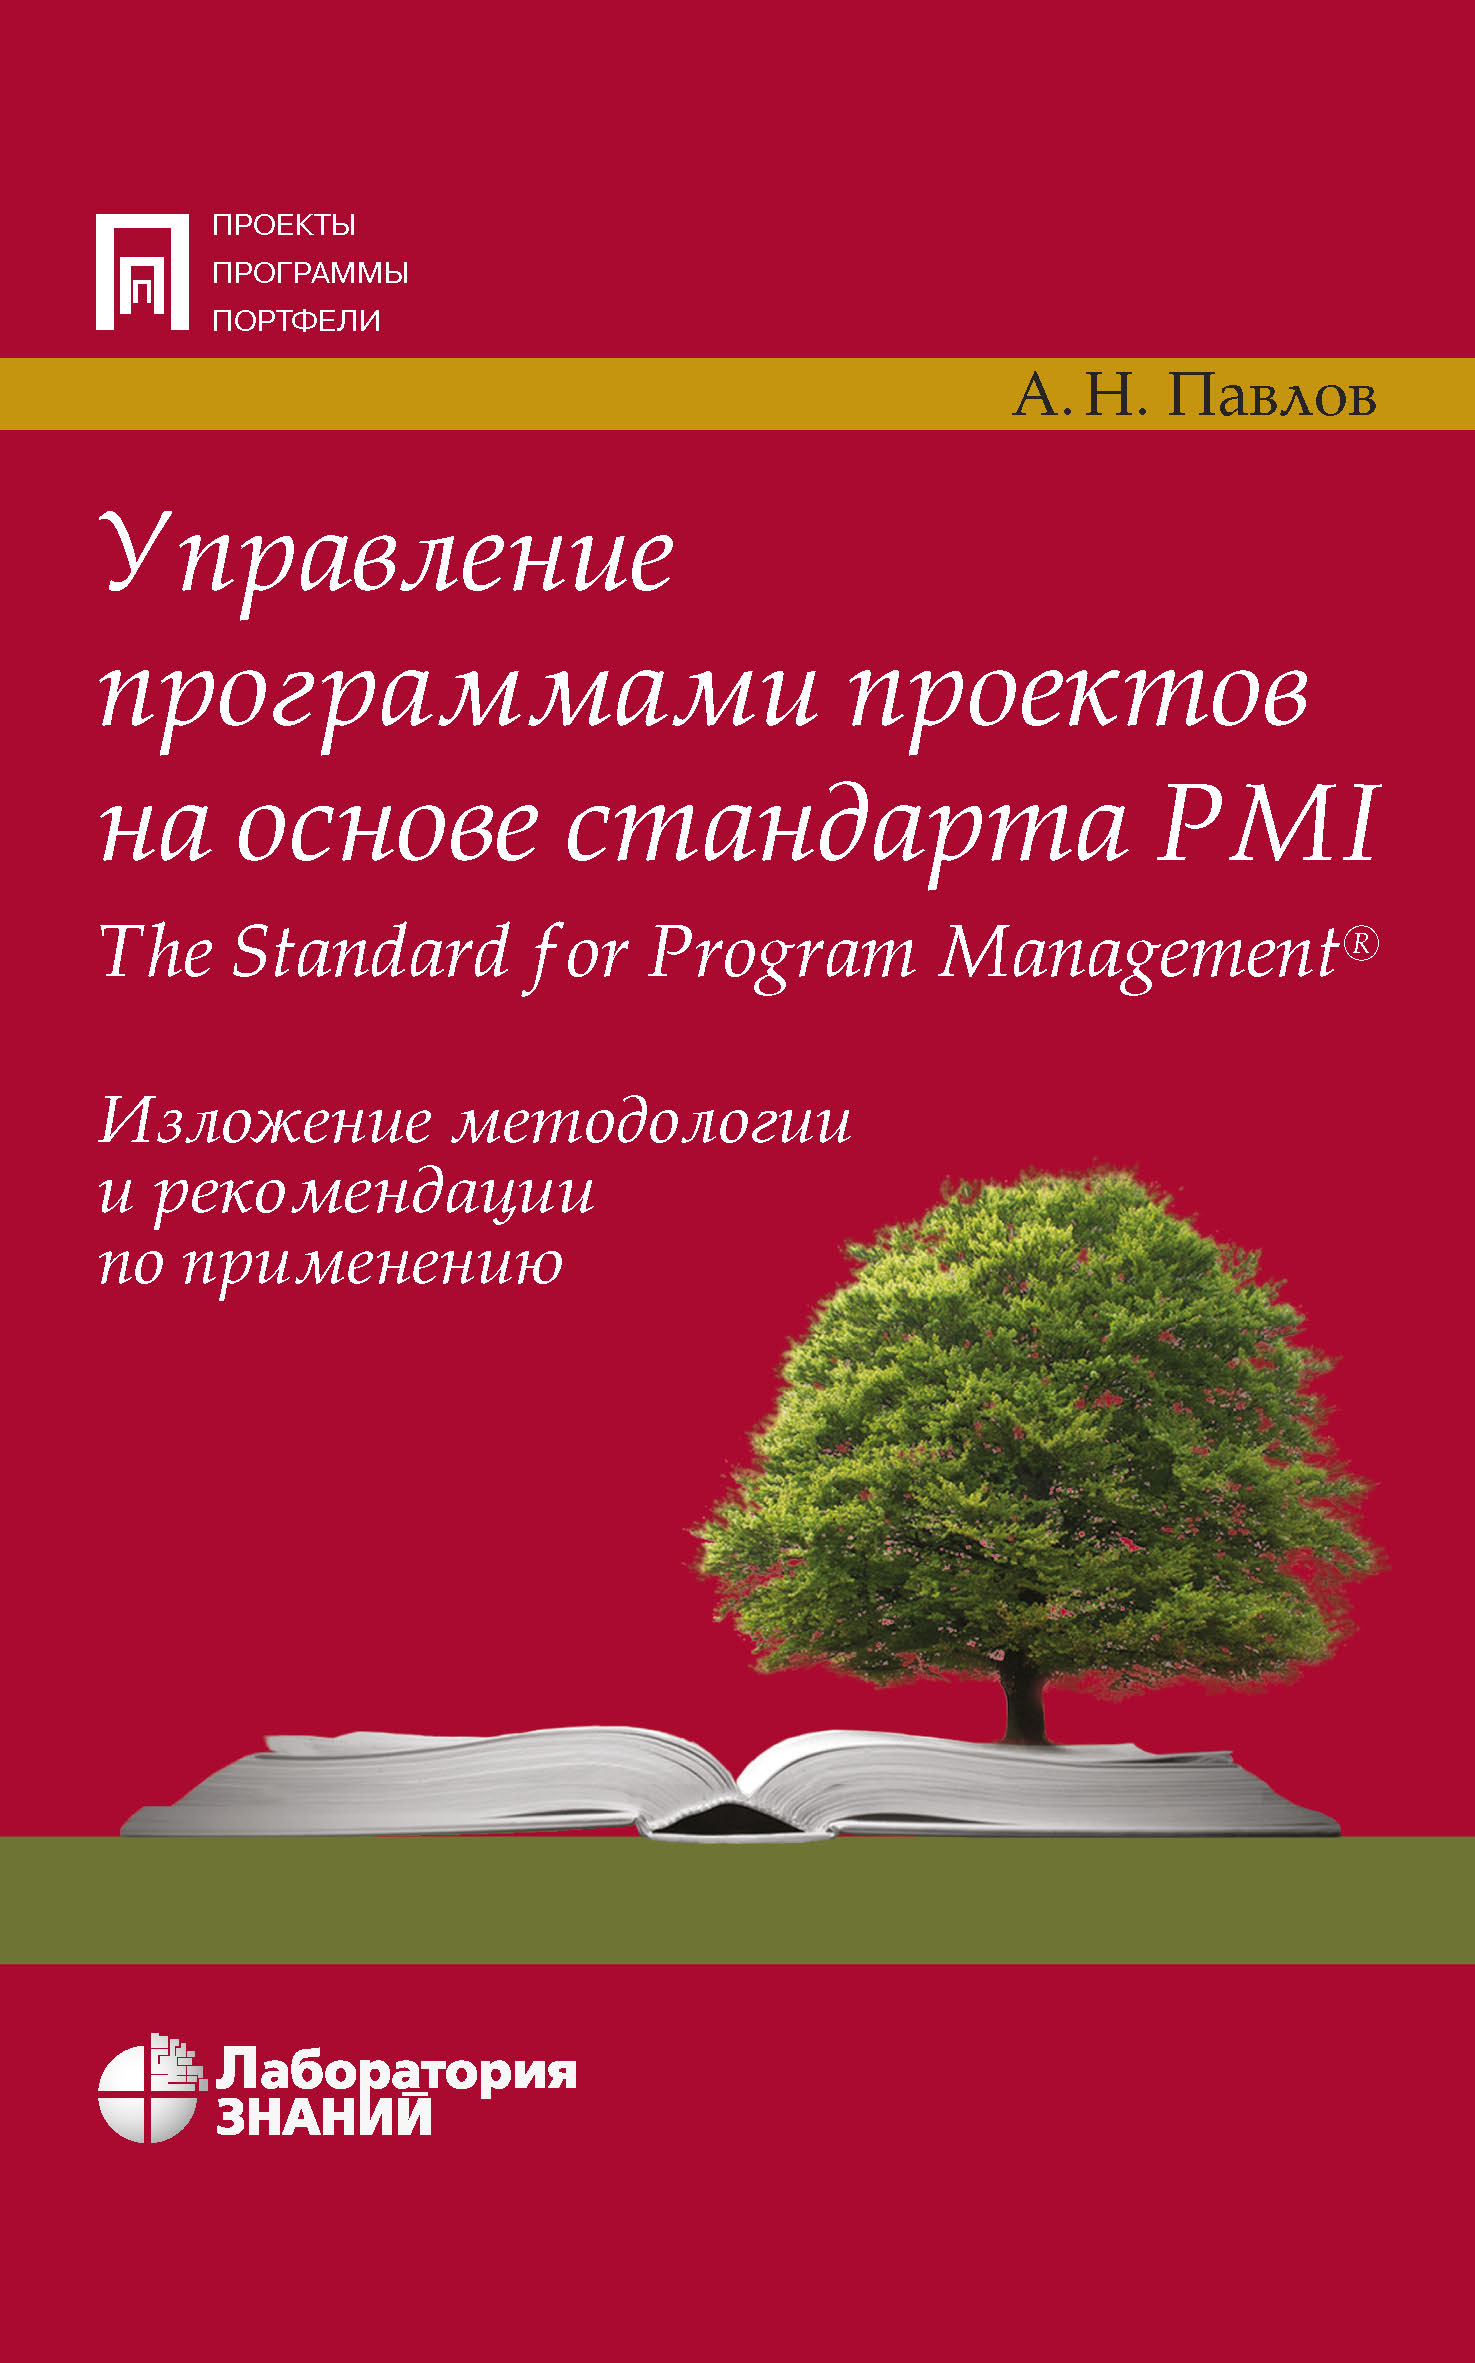 Управление программами проектов на основе стандарта PMI The Standard for Program Management. Изложение методологии и рекомендации по применению